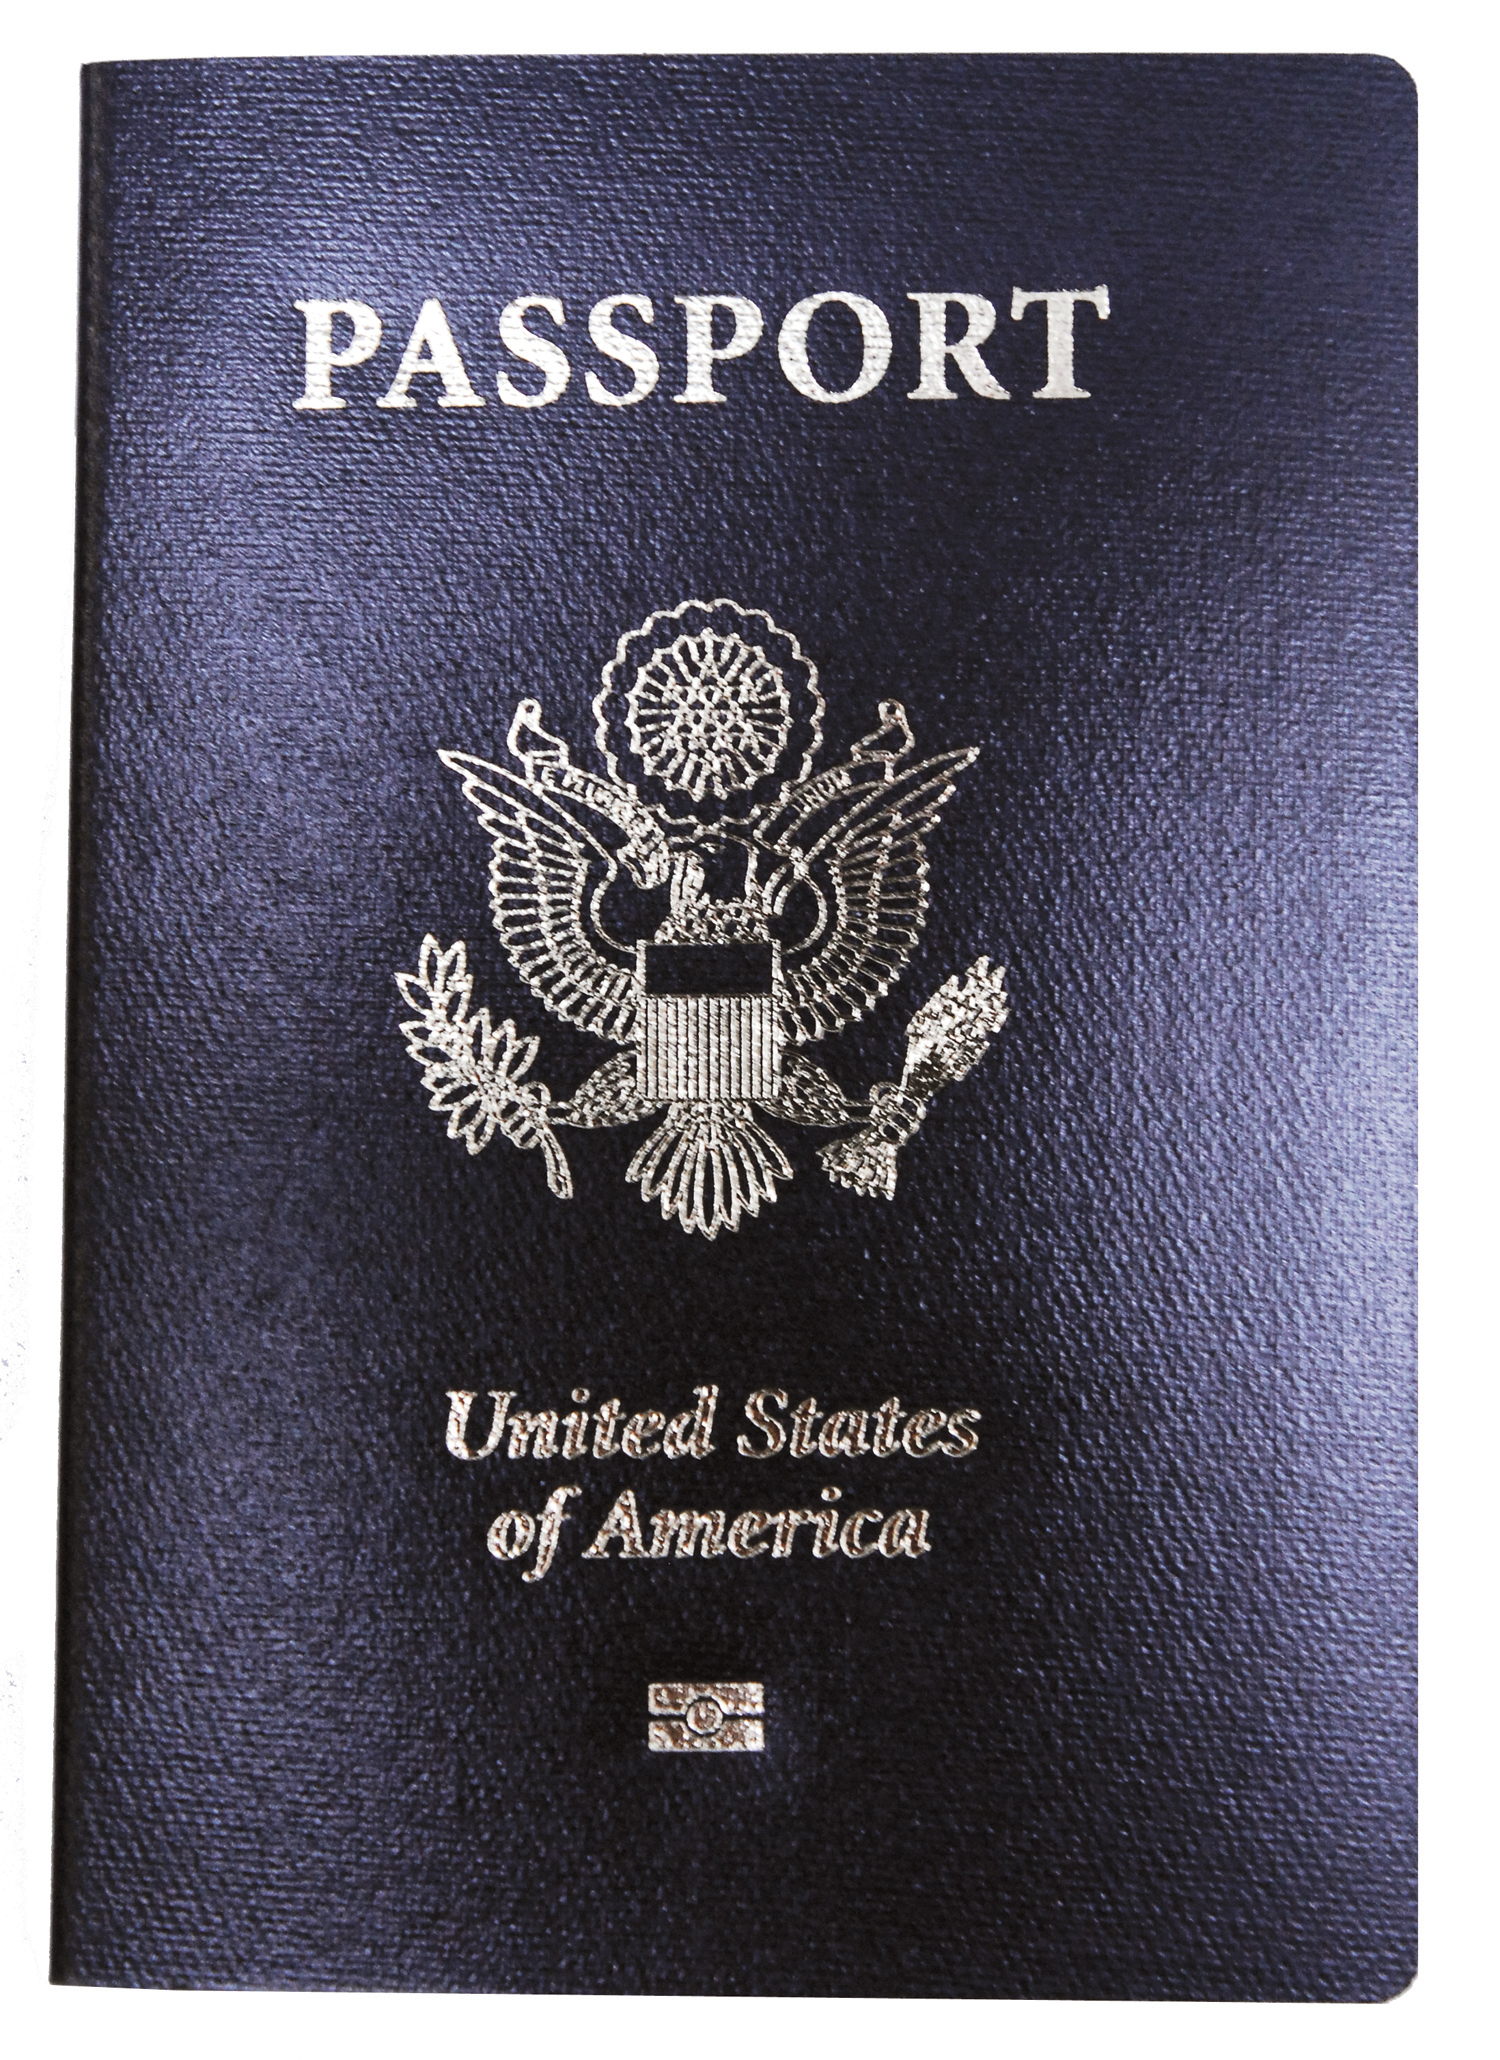 מהם הקריטריונים להוצאת דרכון פולני